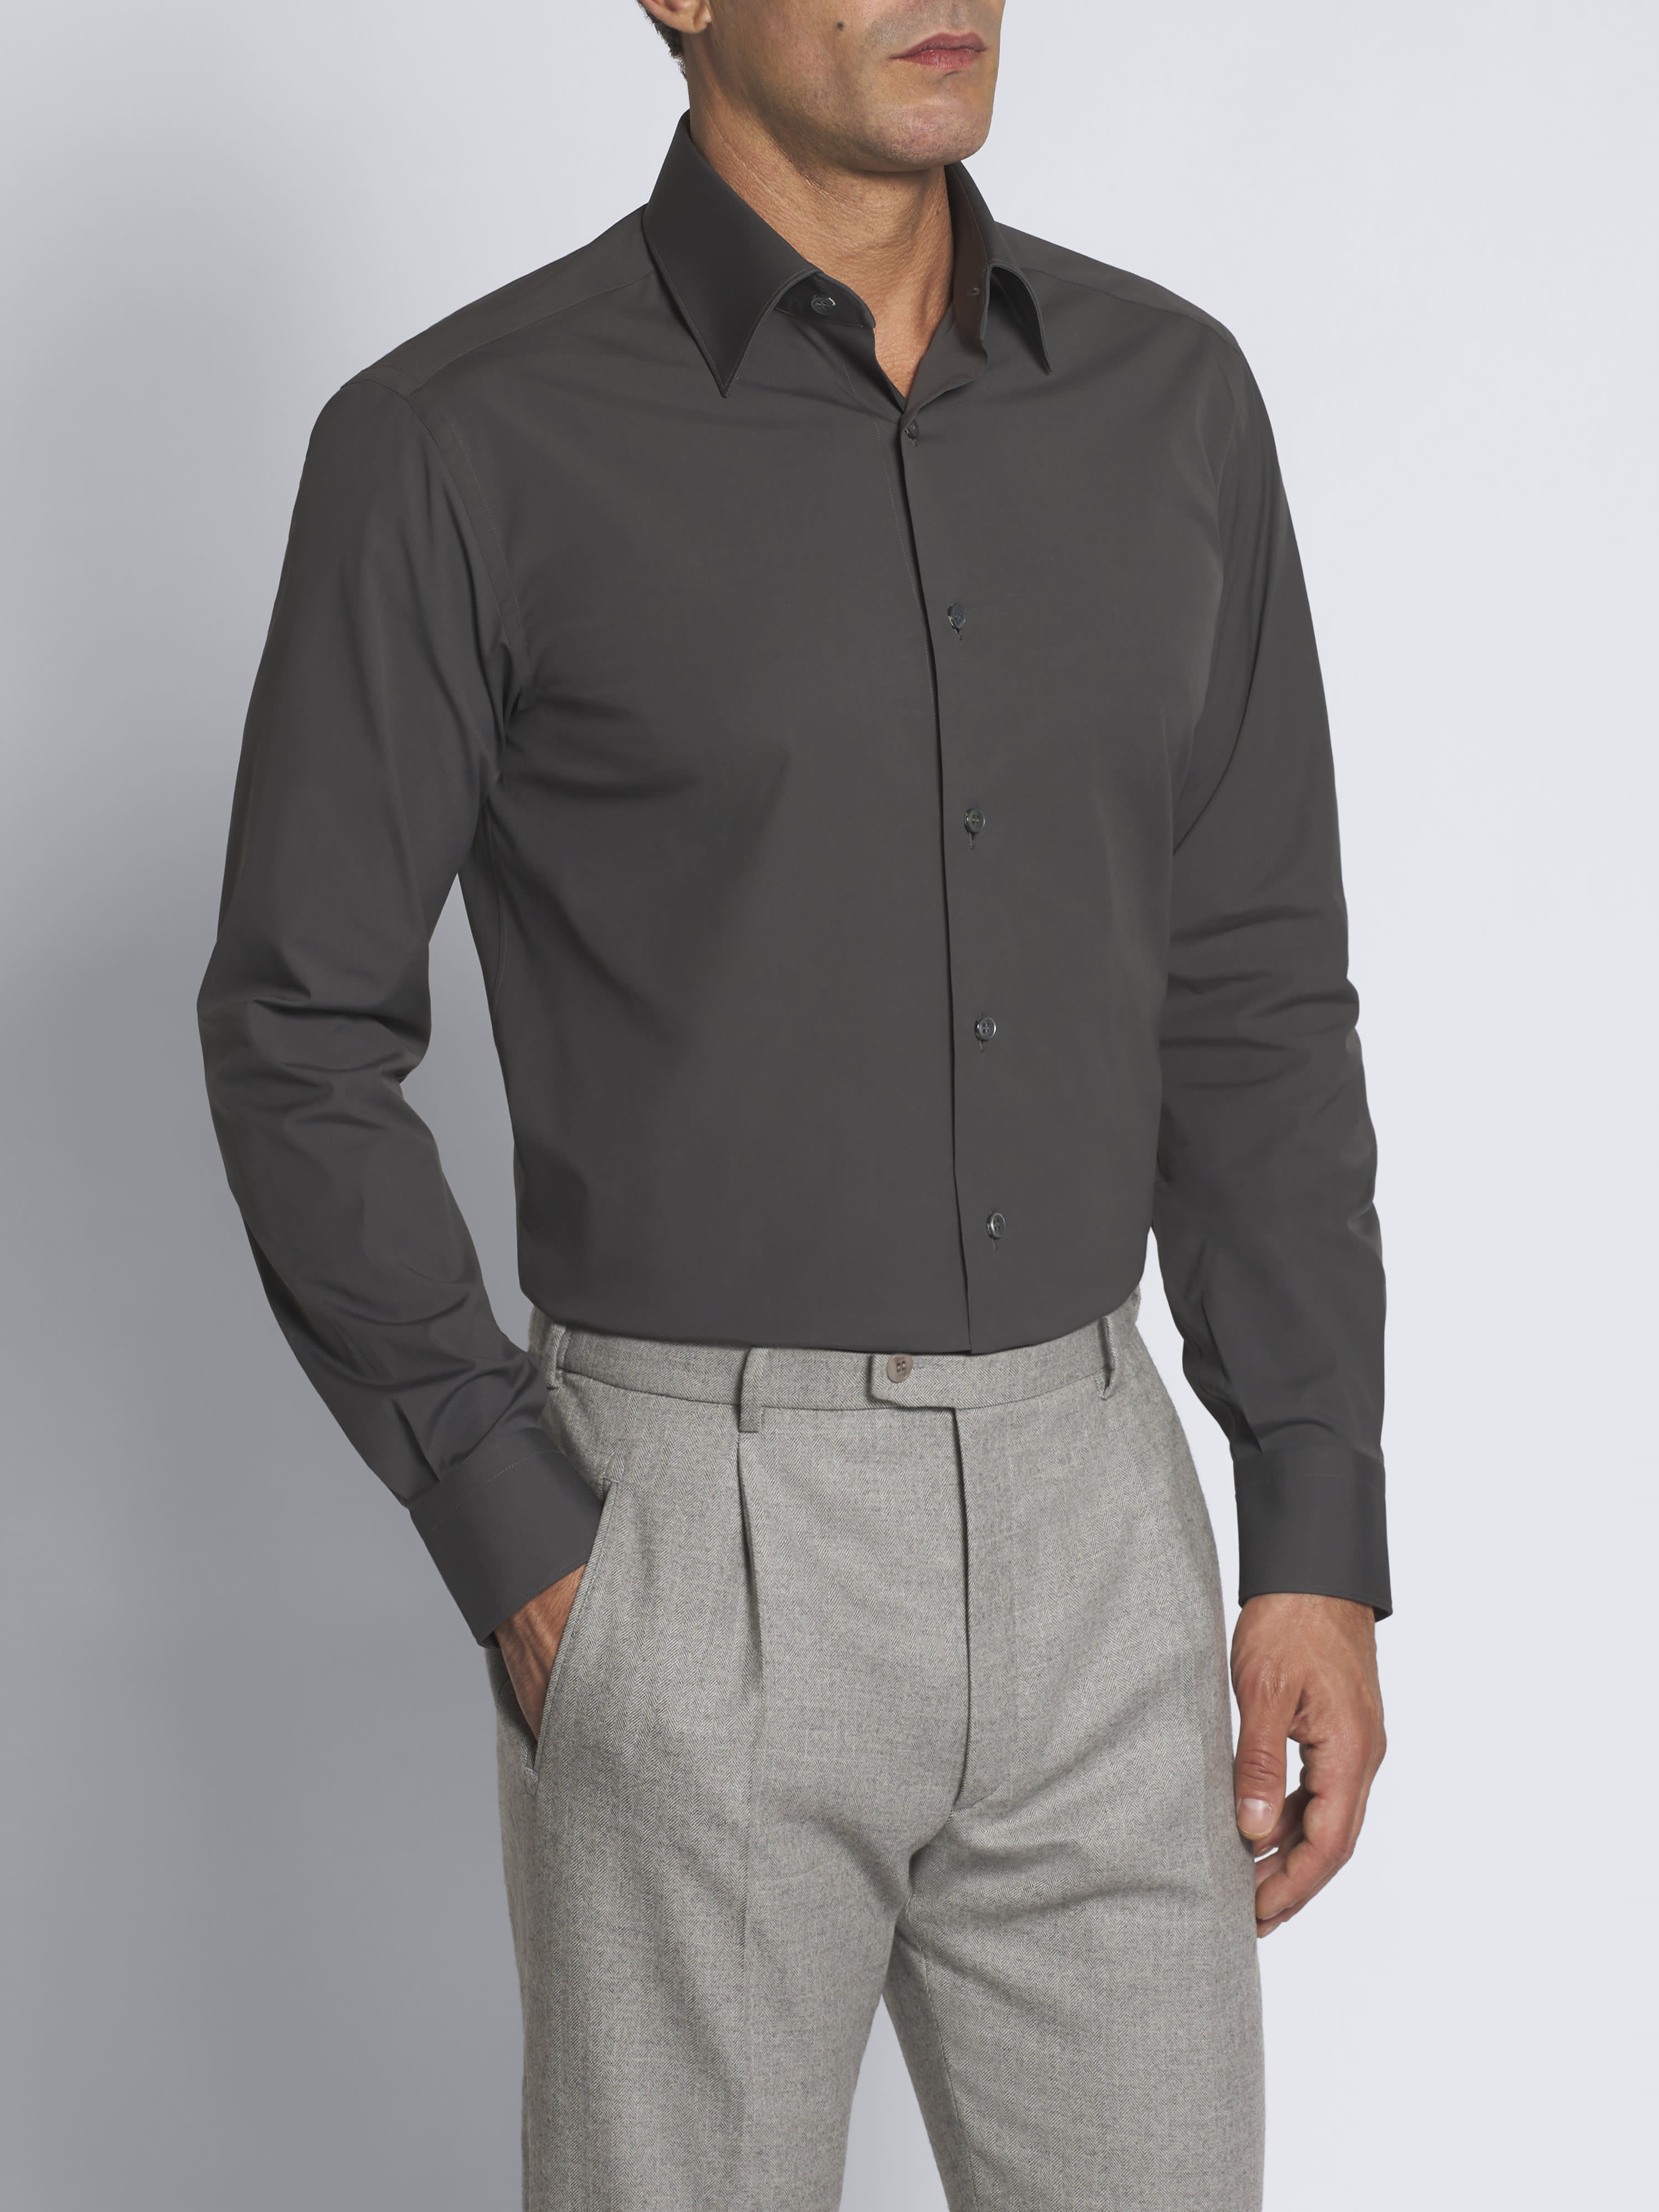 Dark grey cotton blend formal shirt